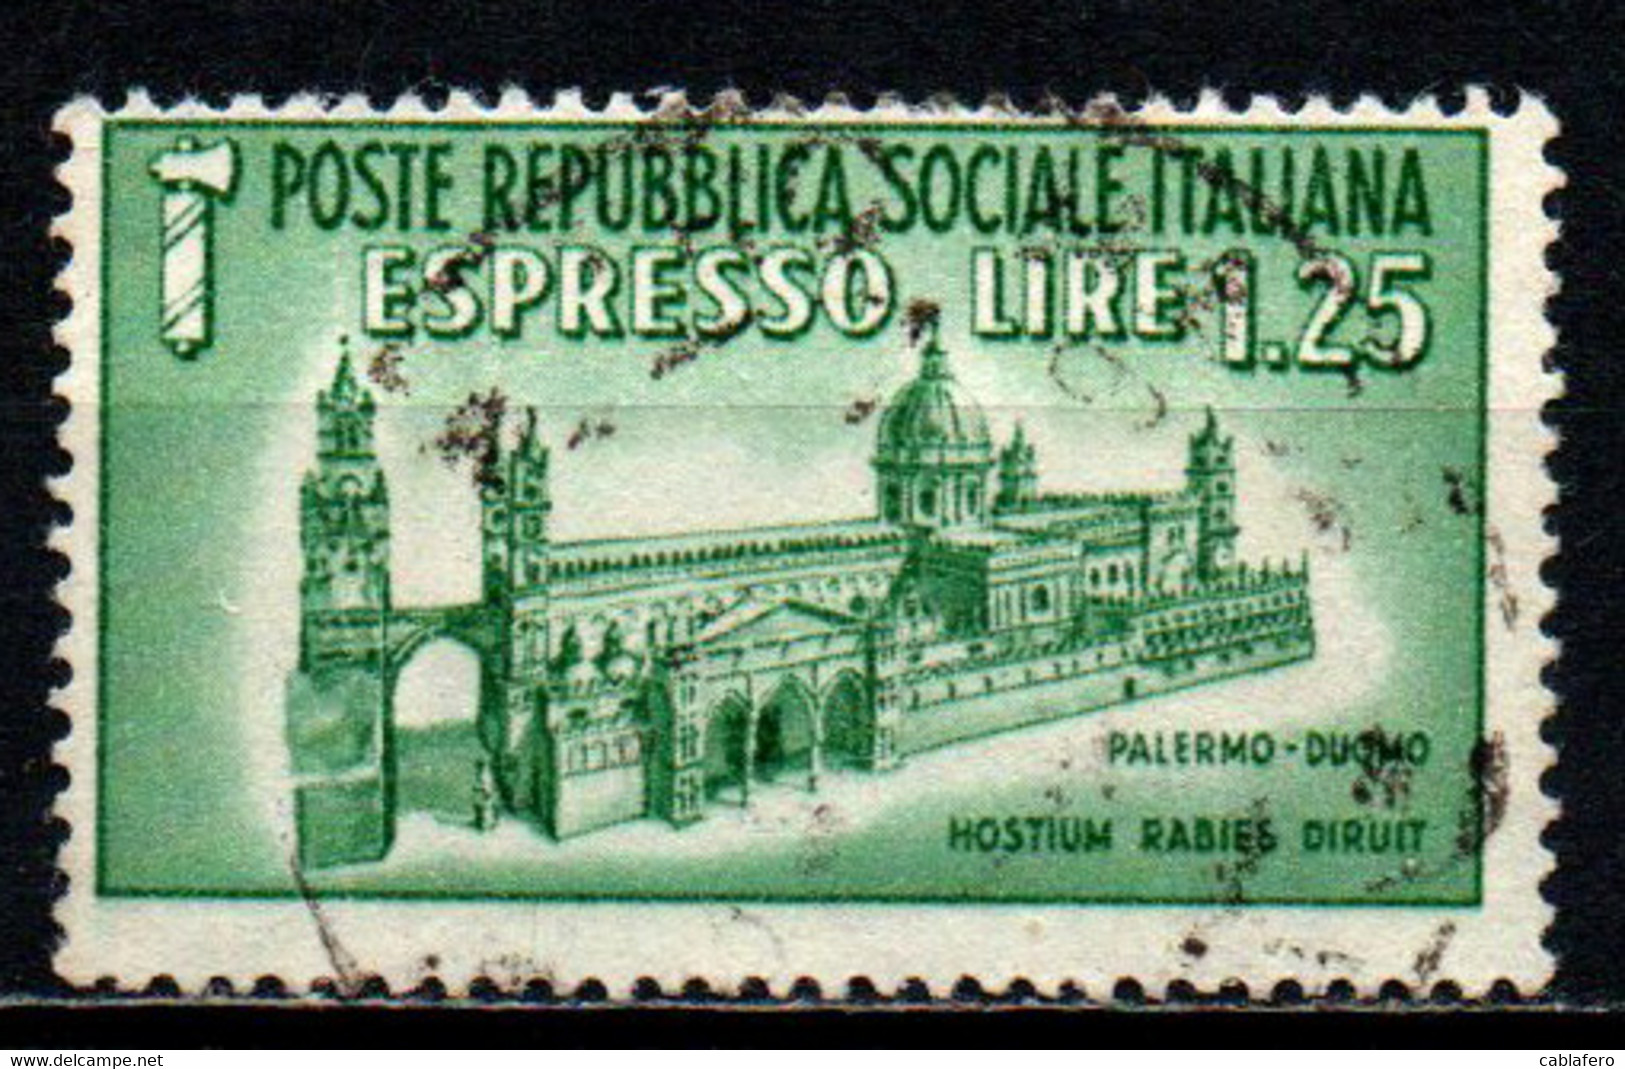 ITALIA RSI - 1944 - DUOMO DI PALERMO - USATO - Express Mail